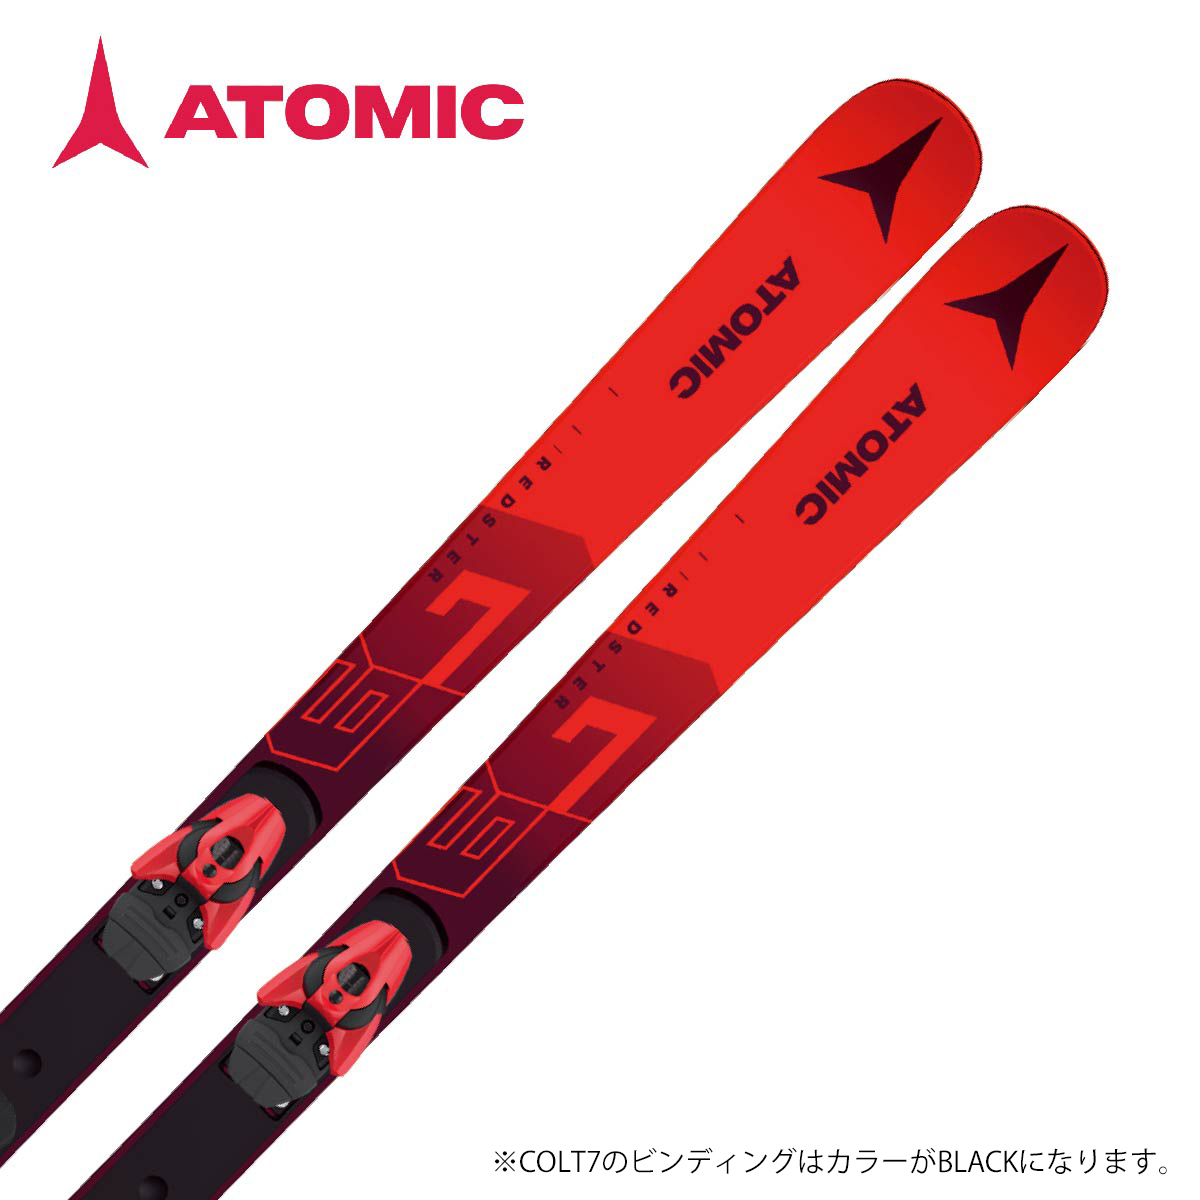 【楽天市場】エントリでP4倍!4/5限定! スキー板 ATOMIC アトミック 